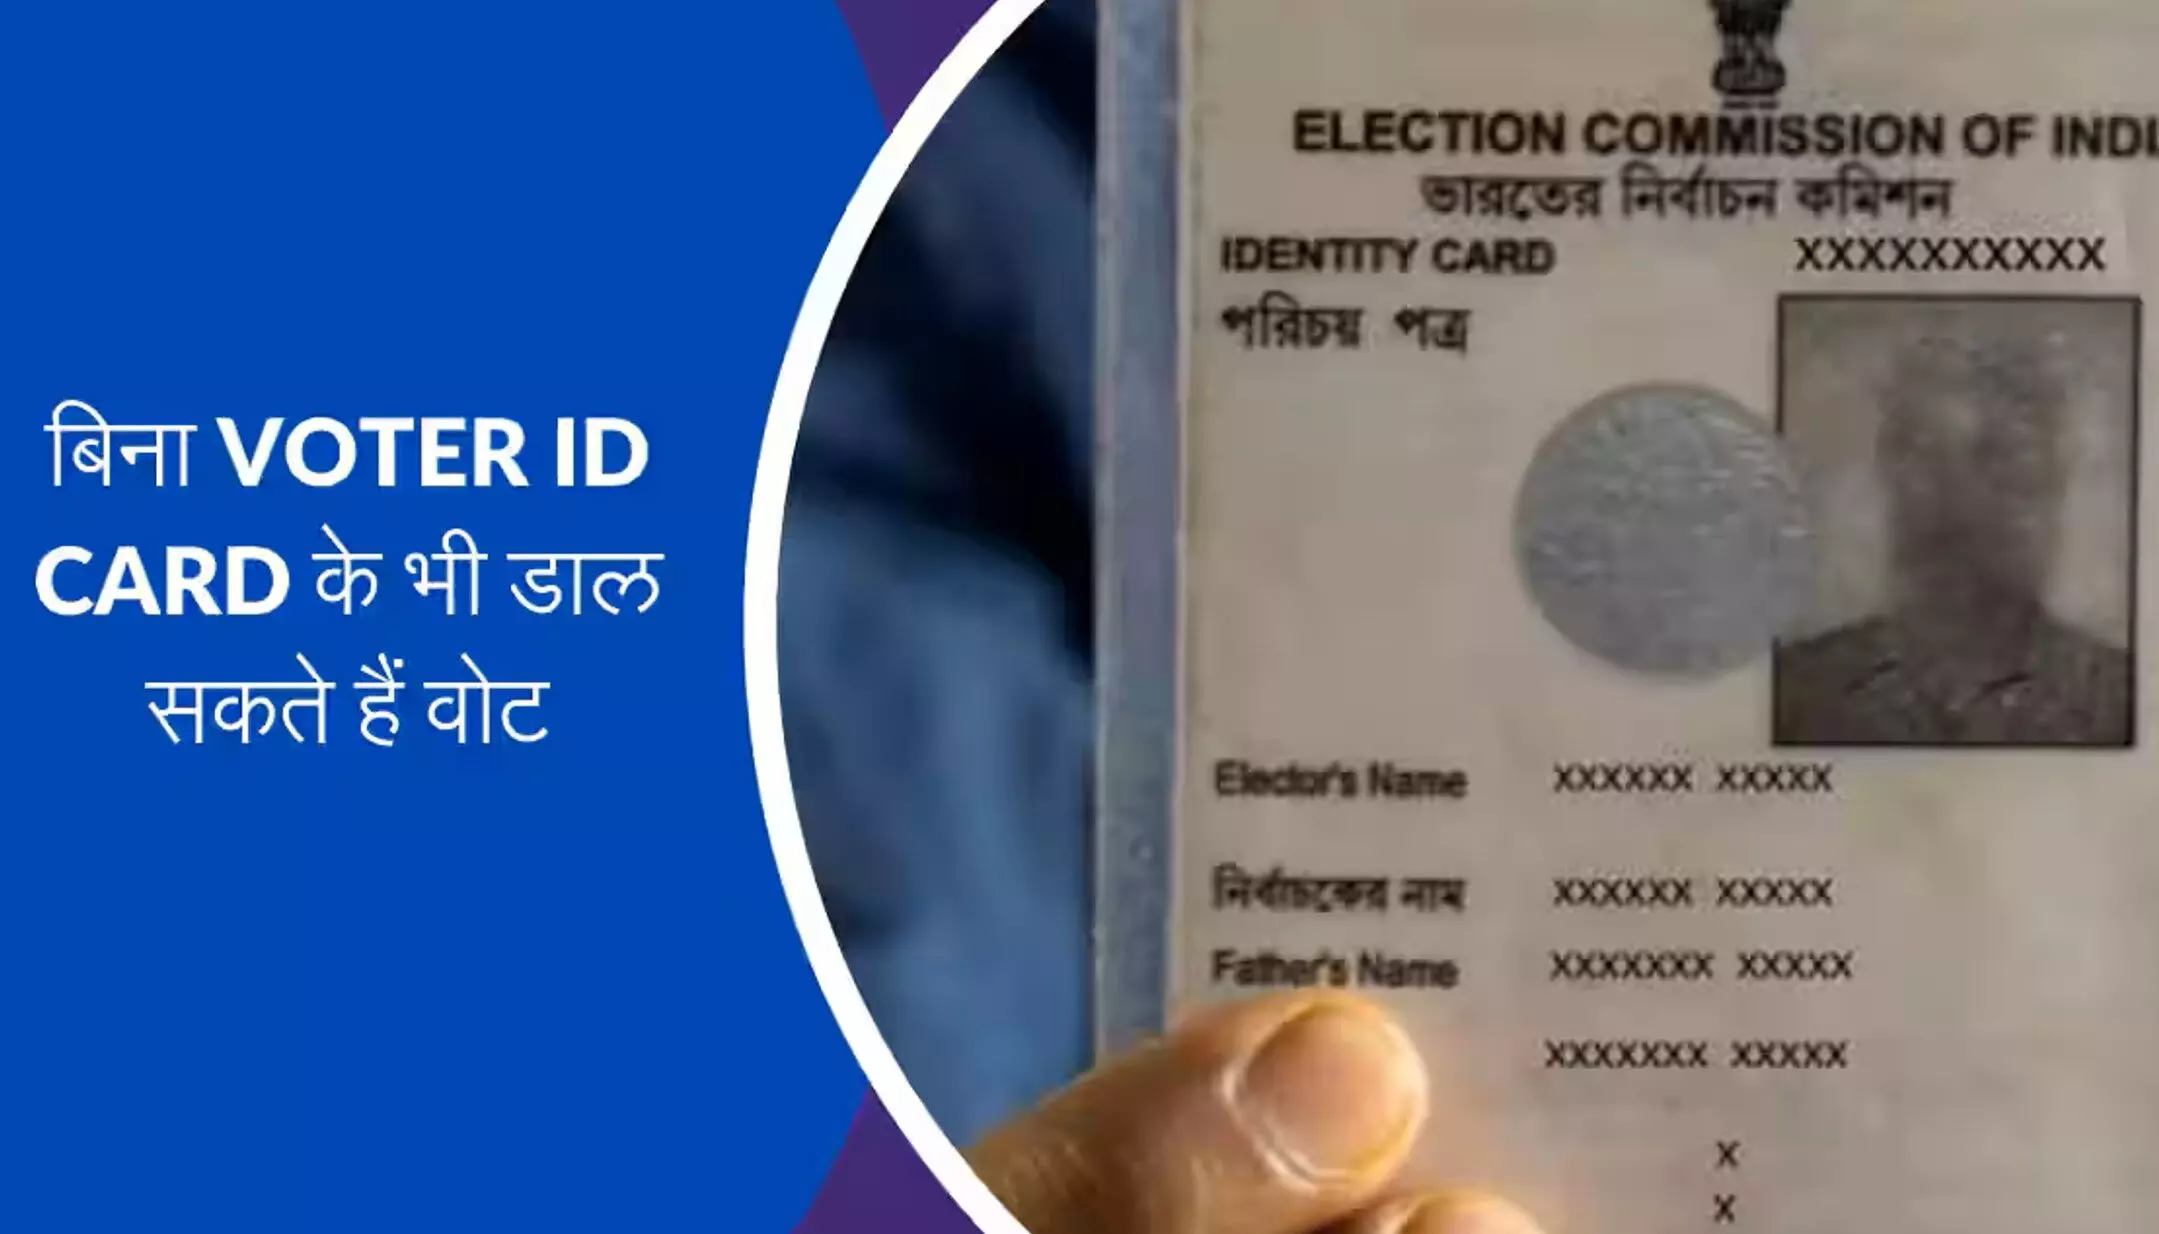 Lok Sabha Election:अब बिना वोटर कार्ड भी डाला जा सकता है वोट, ये है वैकल्पिक डॉक्यूमेंट्स की लिस्ट